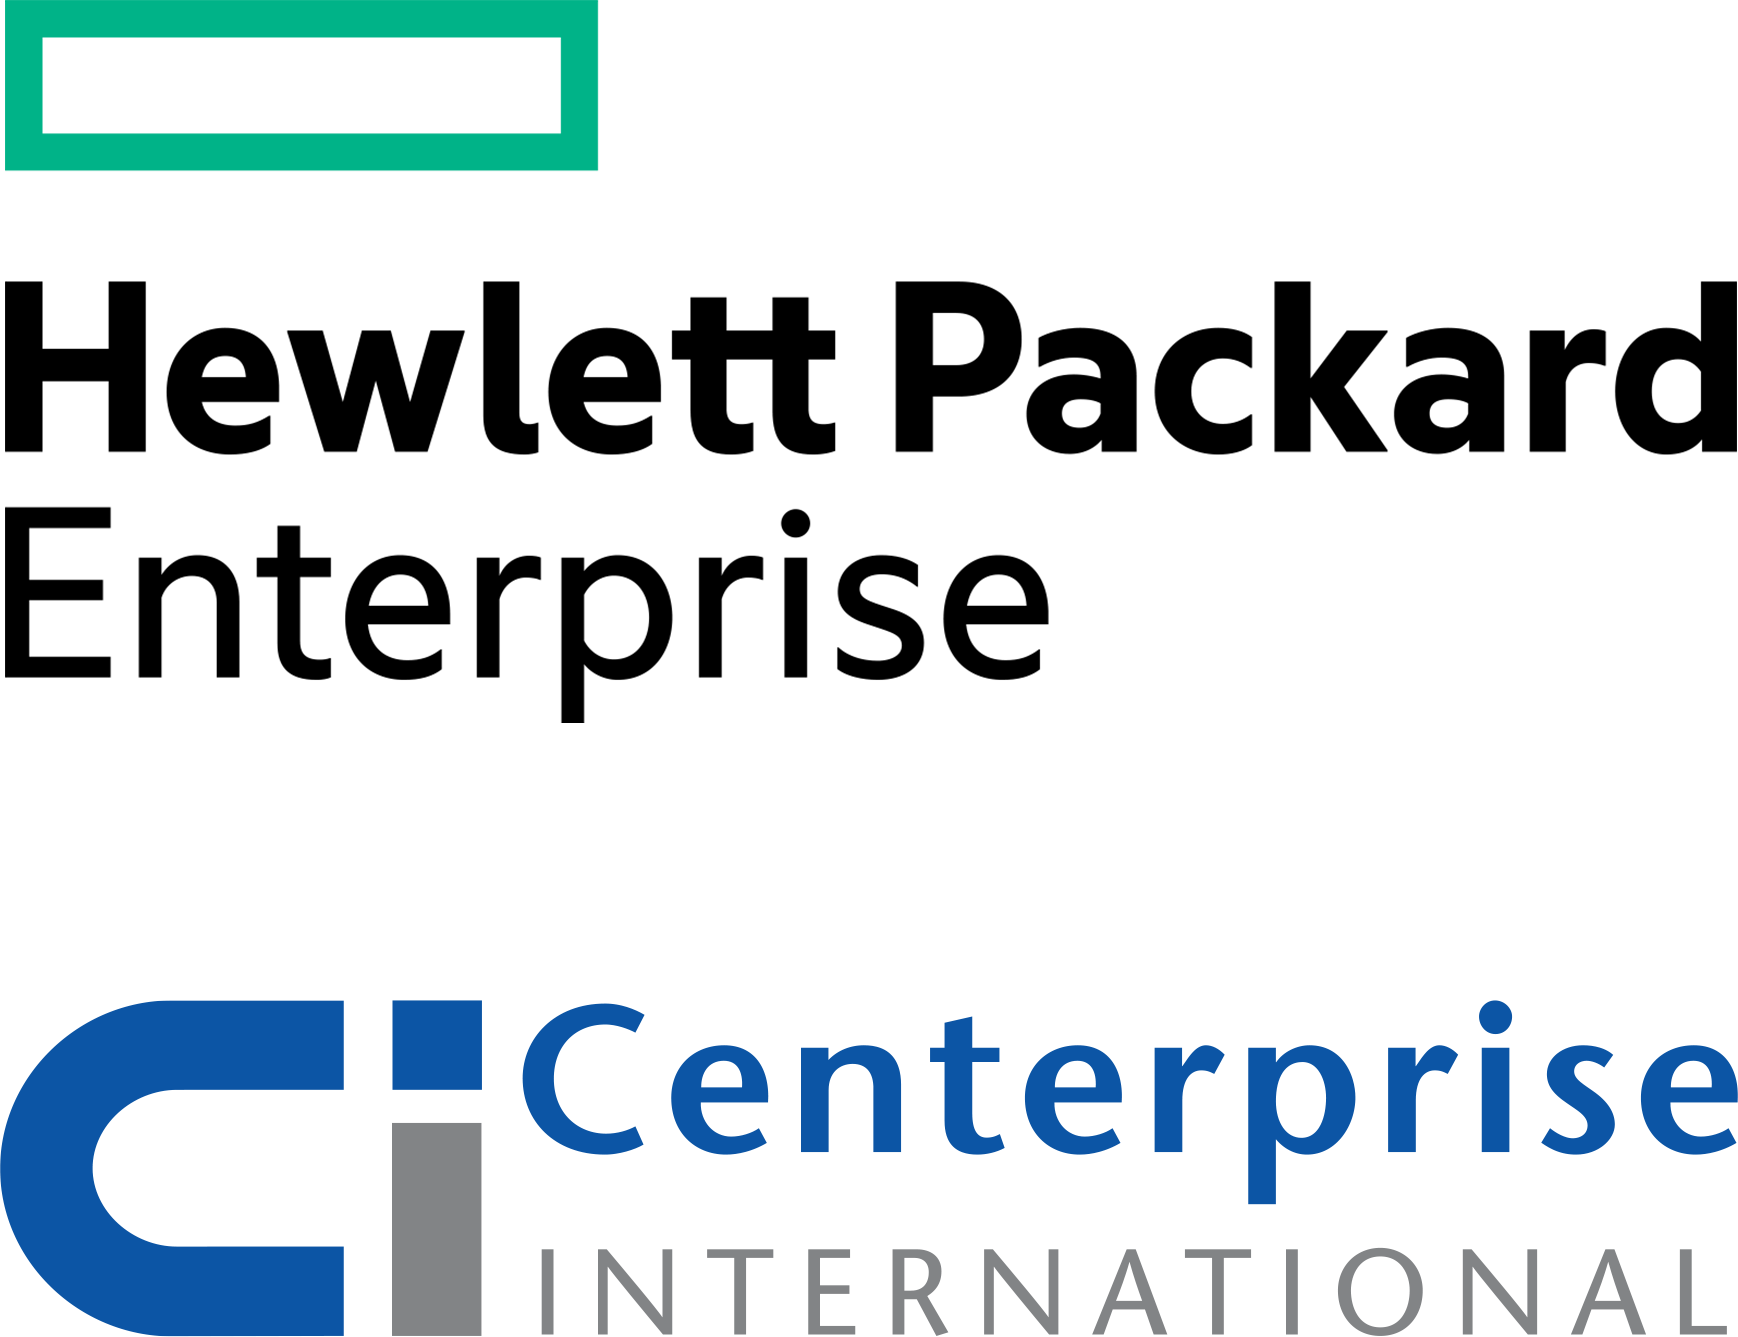 Hewlett Packard Enterprise and Centerprise International